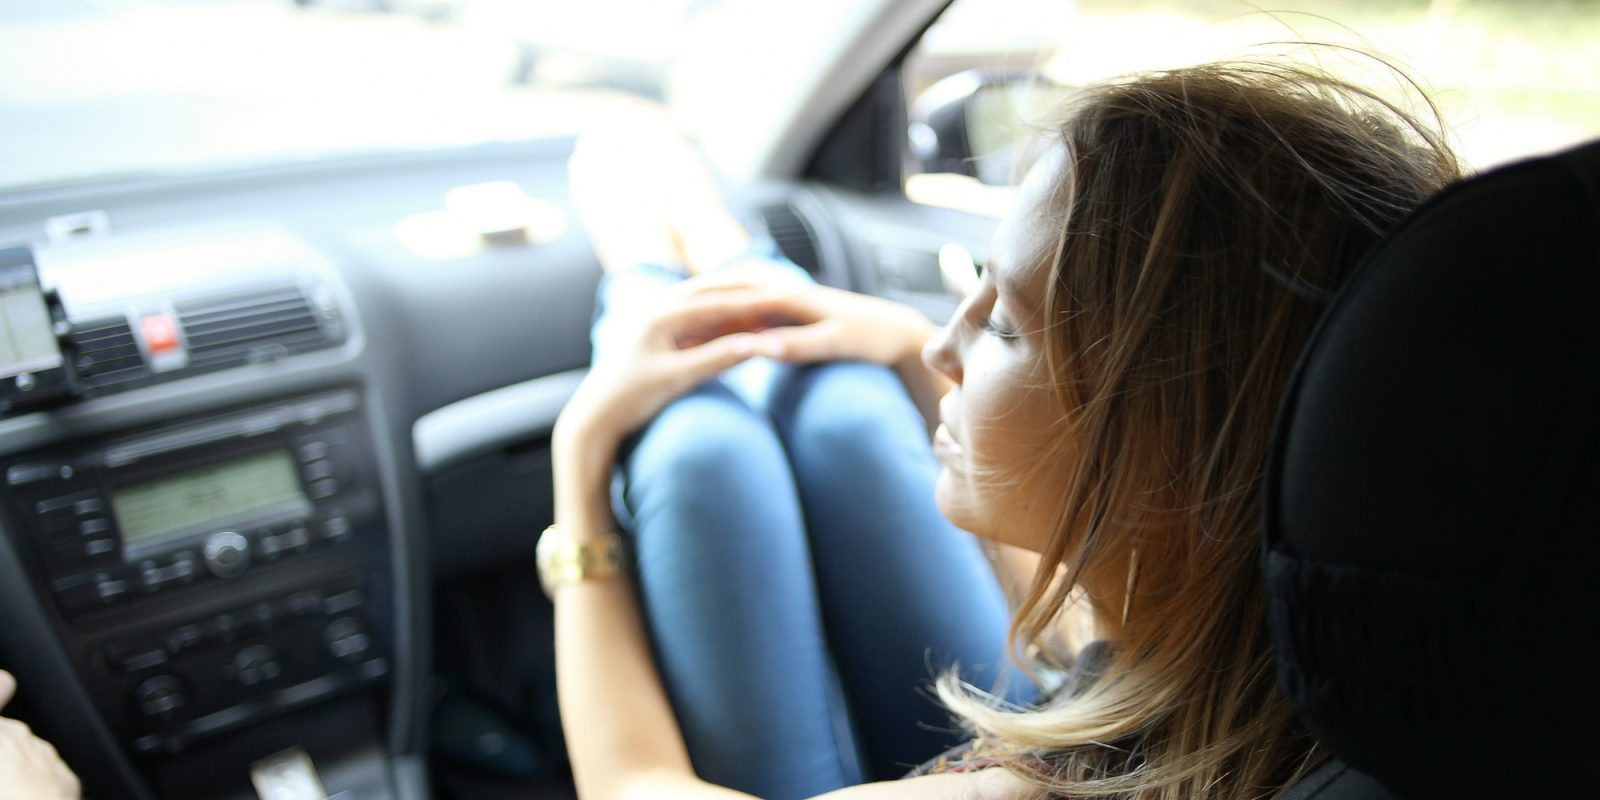 Фото девушки в машине на пассажирском сиденье без лица